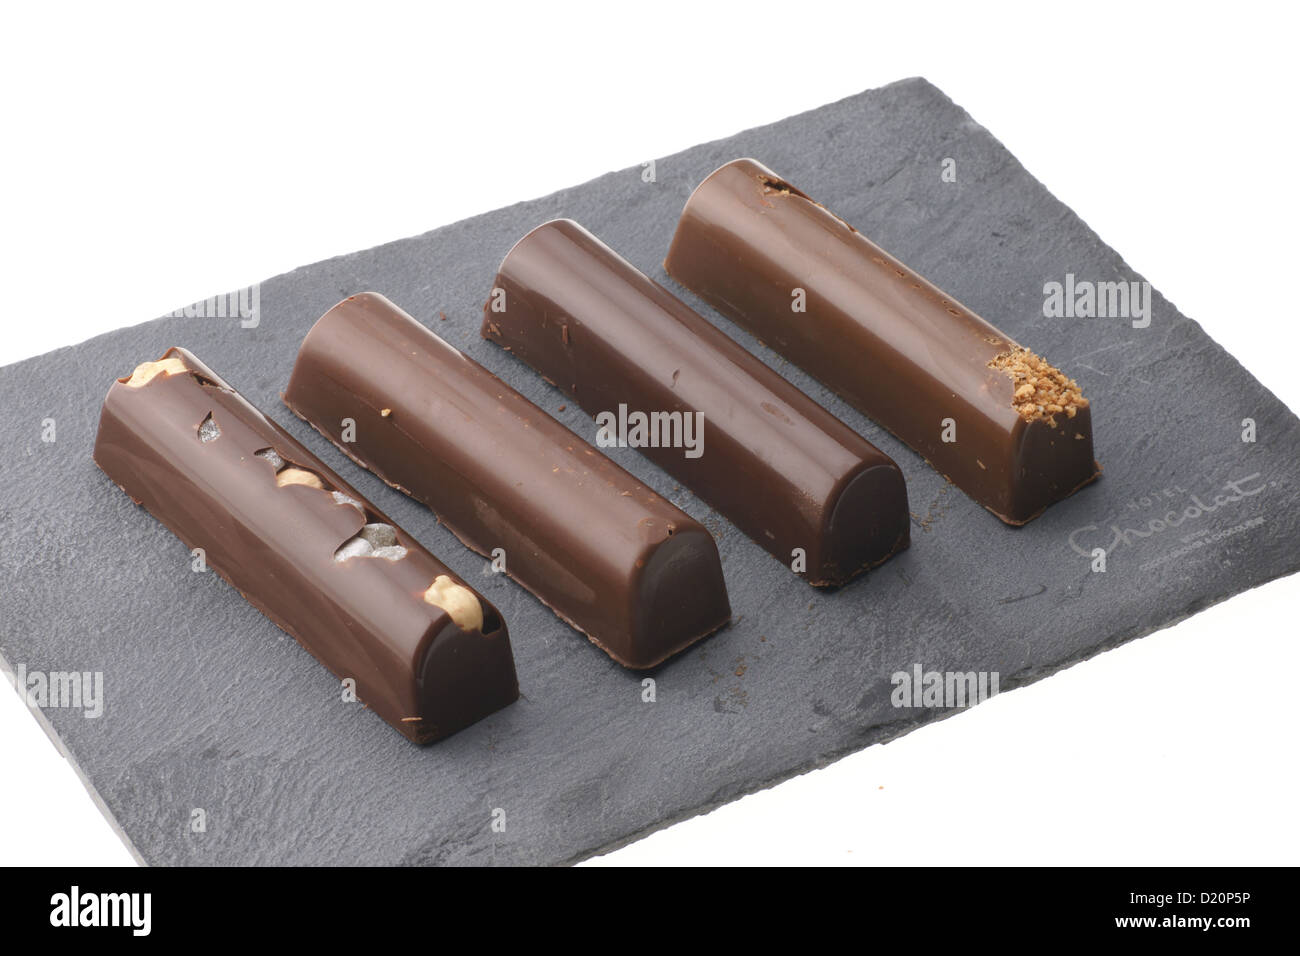 Hotel Chocolat, British coltivatore premium e cioccolatiere marca - manganelli venduto con una firma di ardesia solido tagliere. Foto Stock